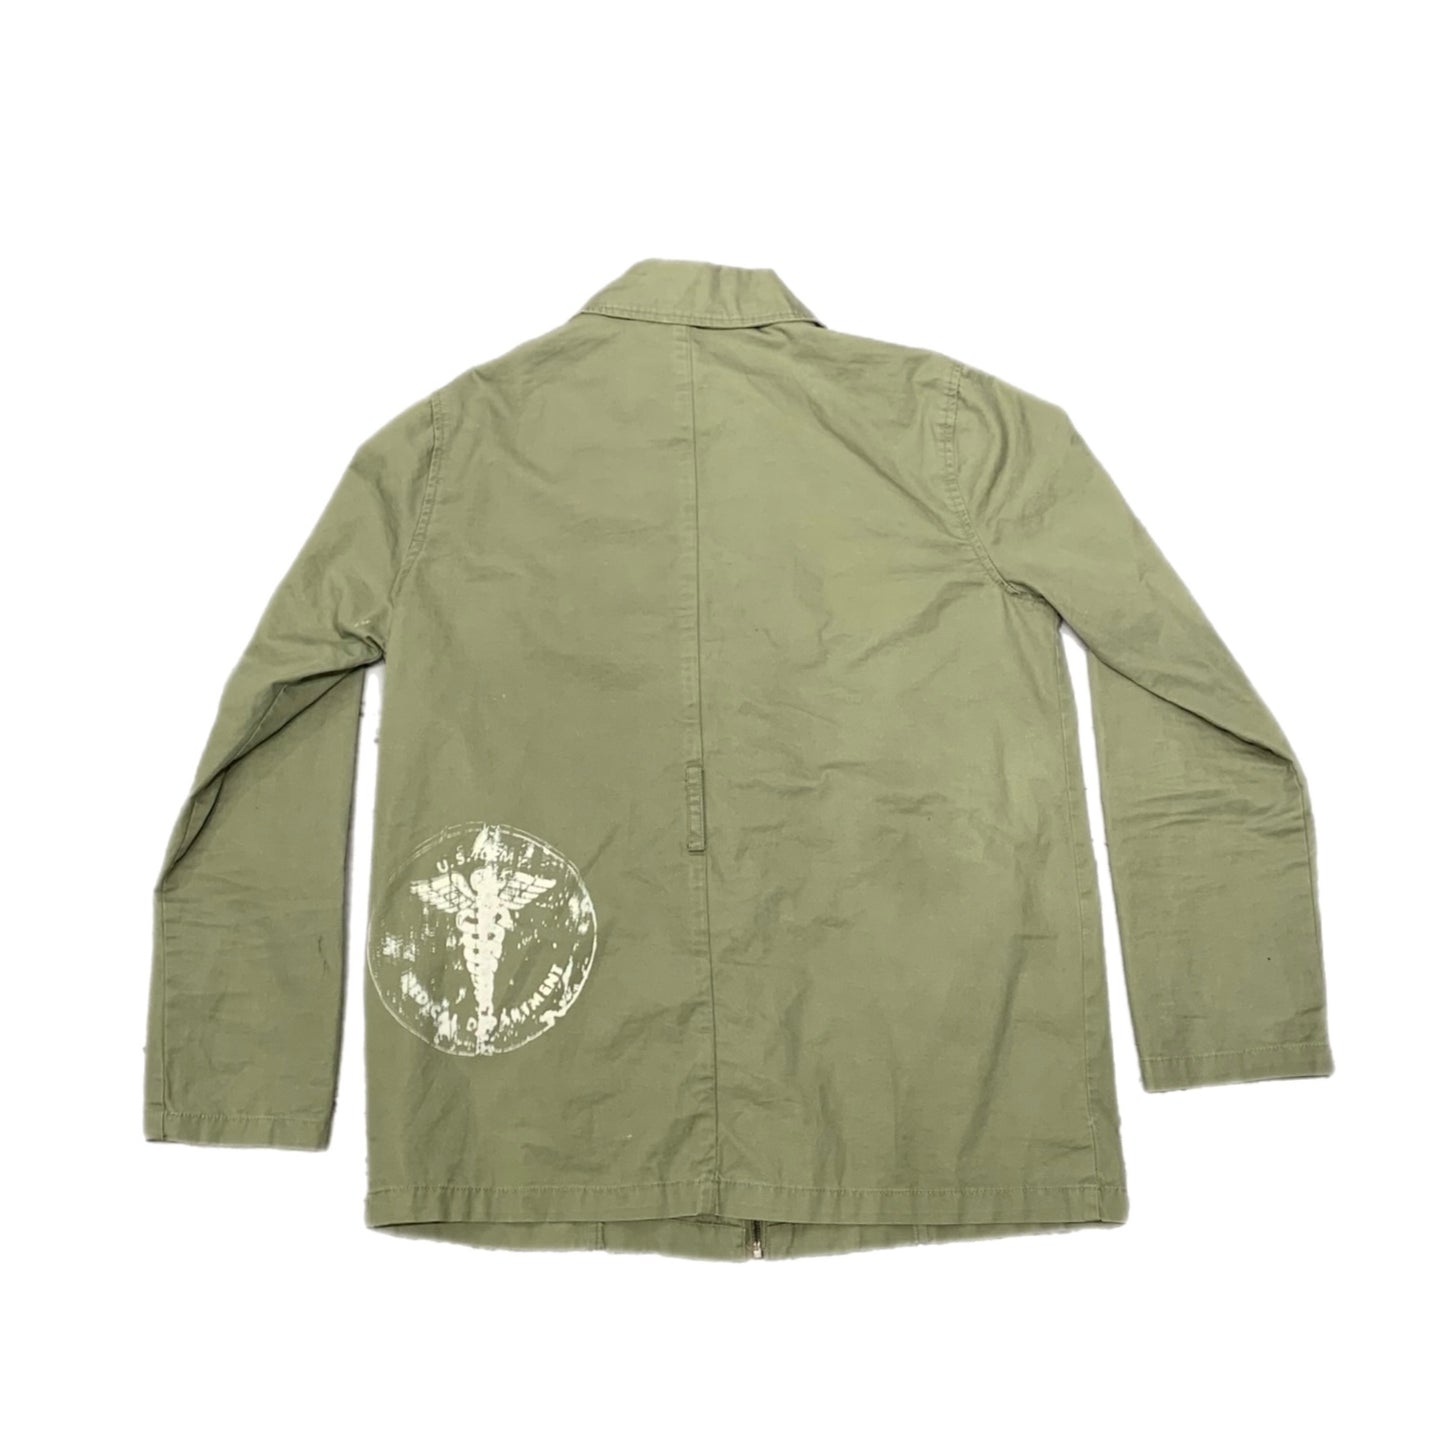 Vintage Military Field Jacket